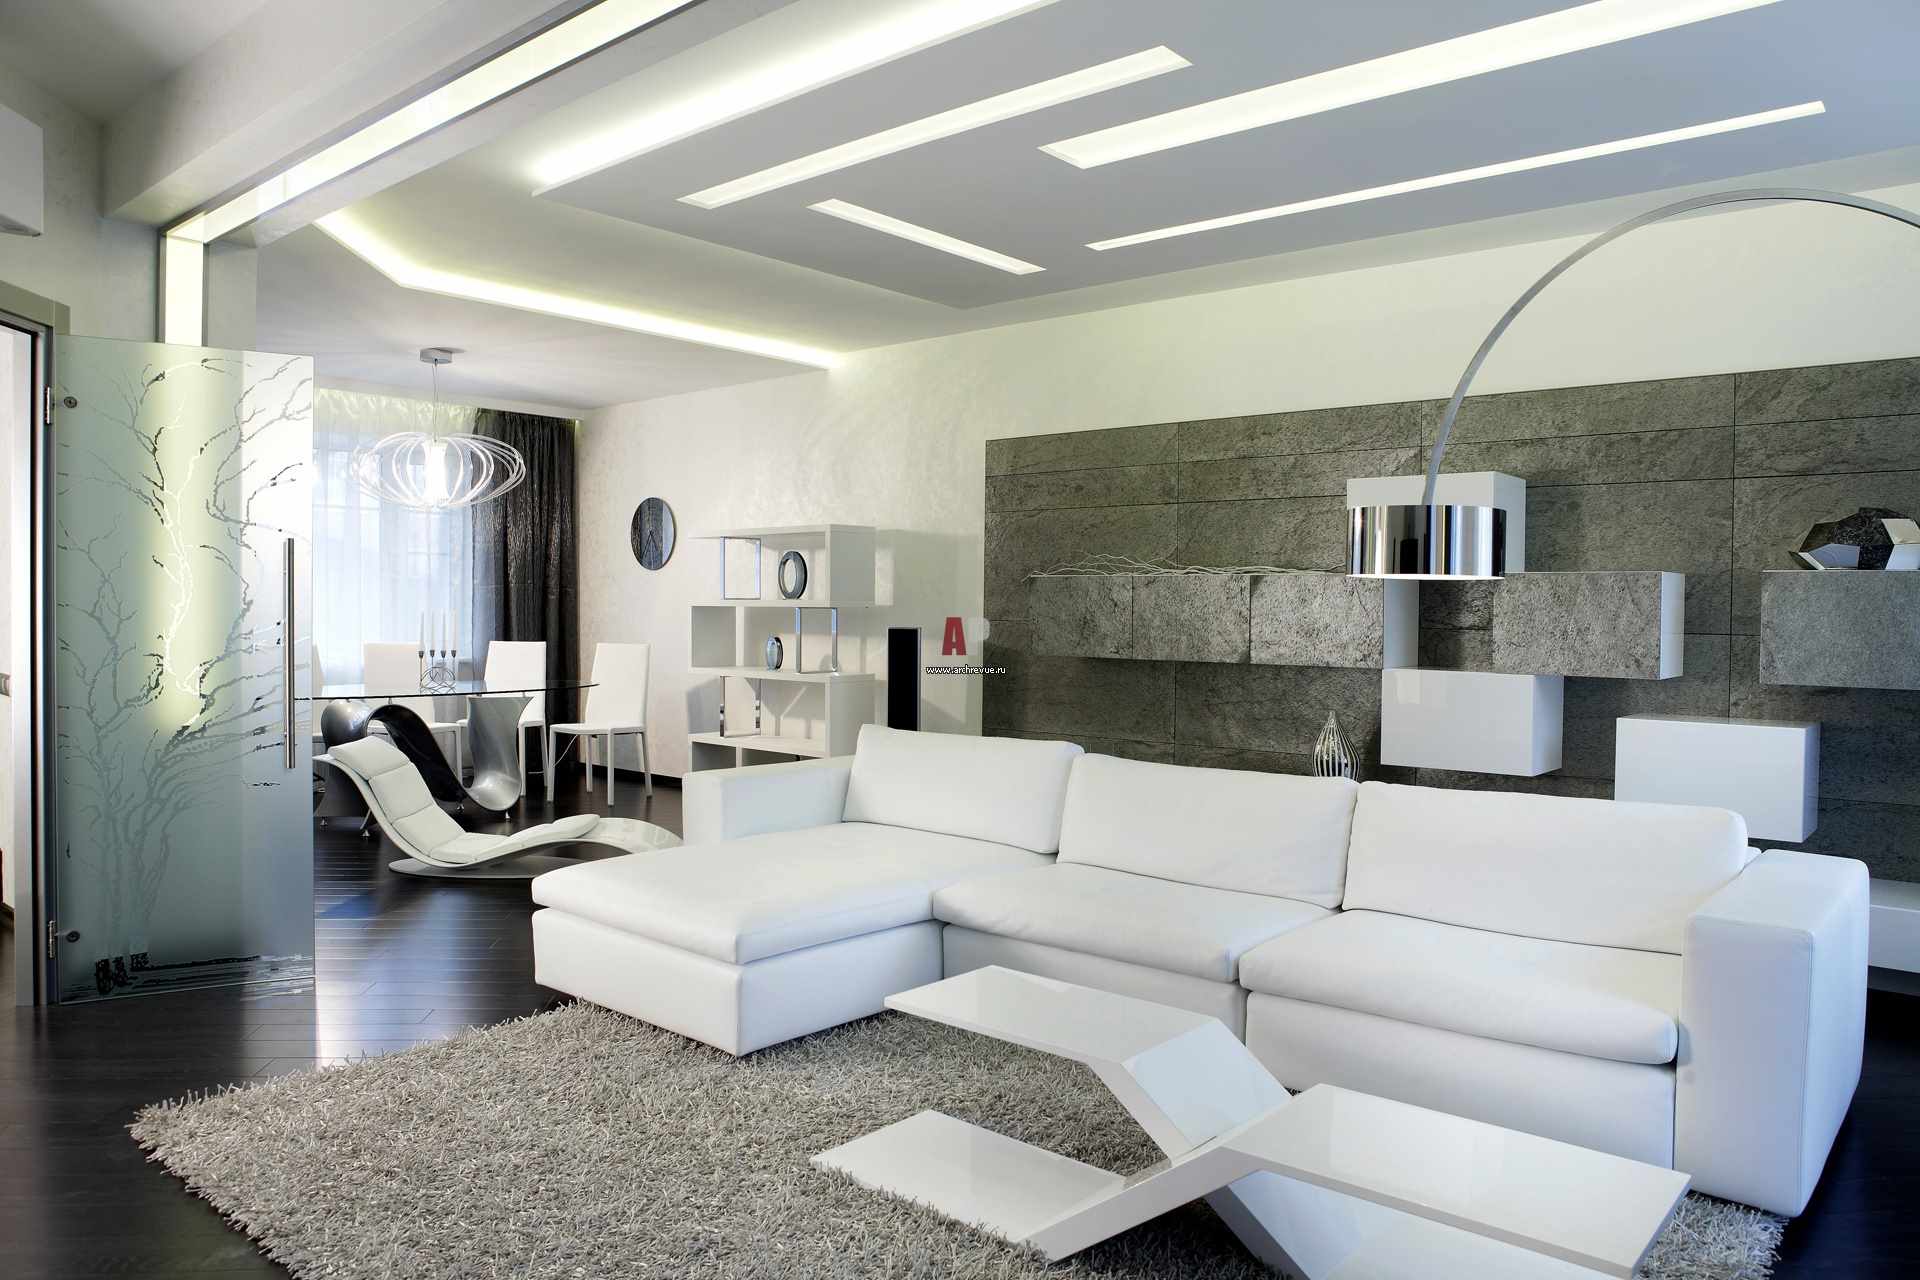 príklad použitia svetlého interiéru obývacej izby v štýle minimalizmu